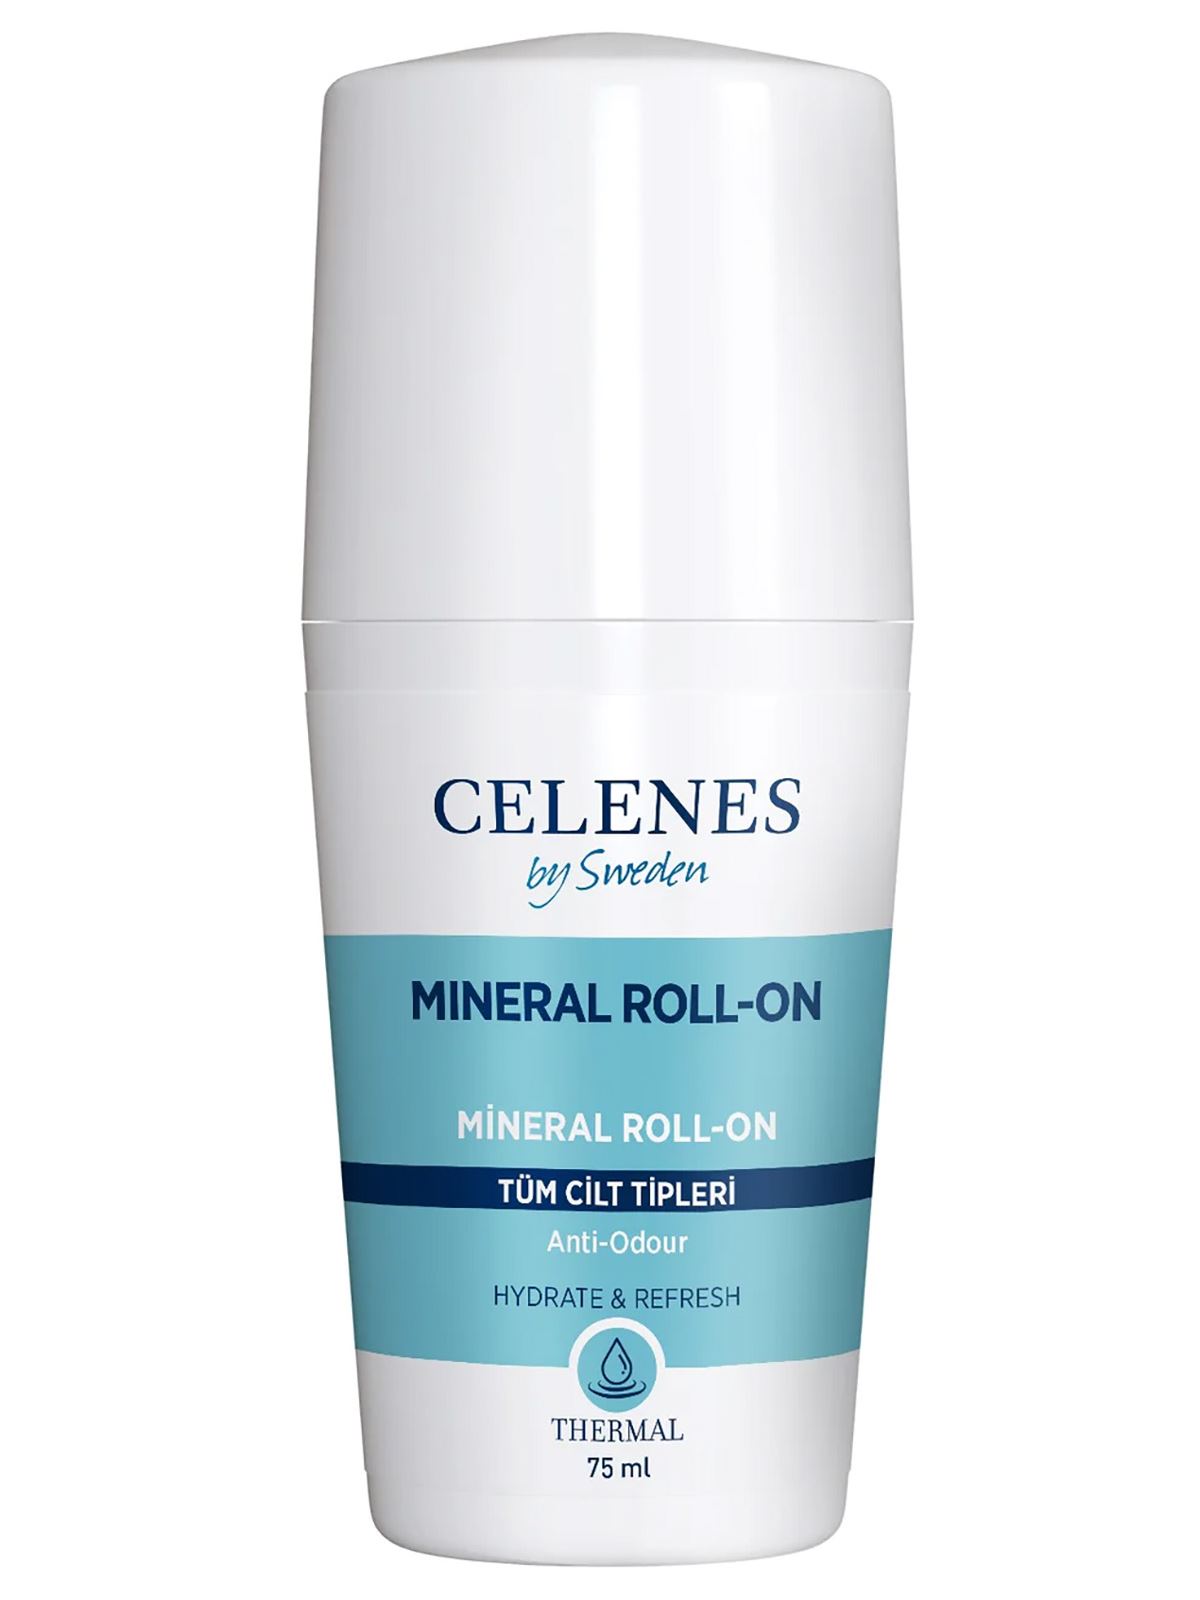 Celenes Thermal Roll-On Tüm Cilt Tipleri 75 ml